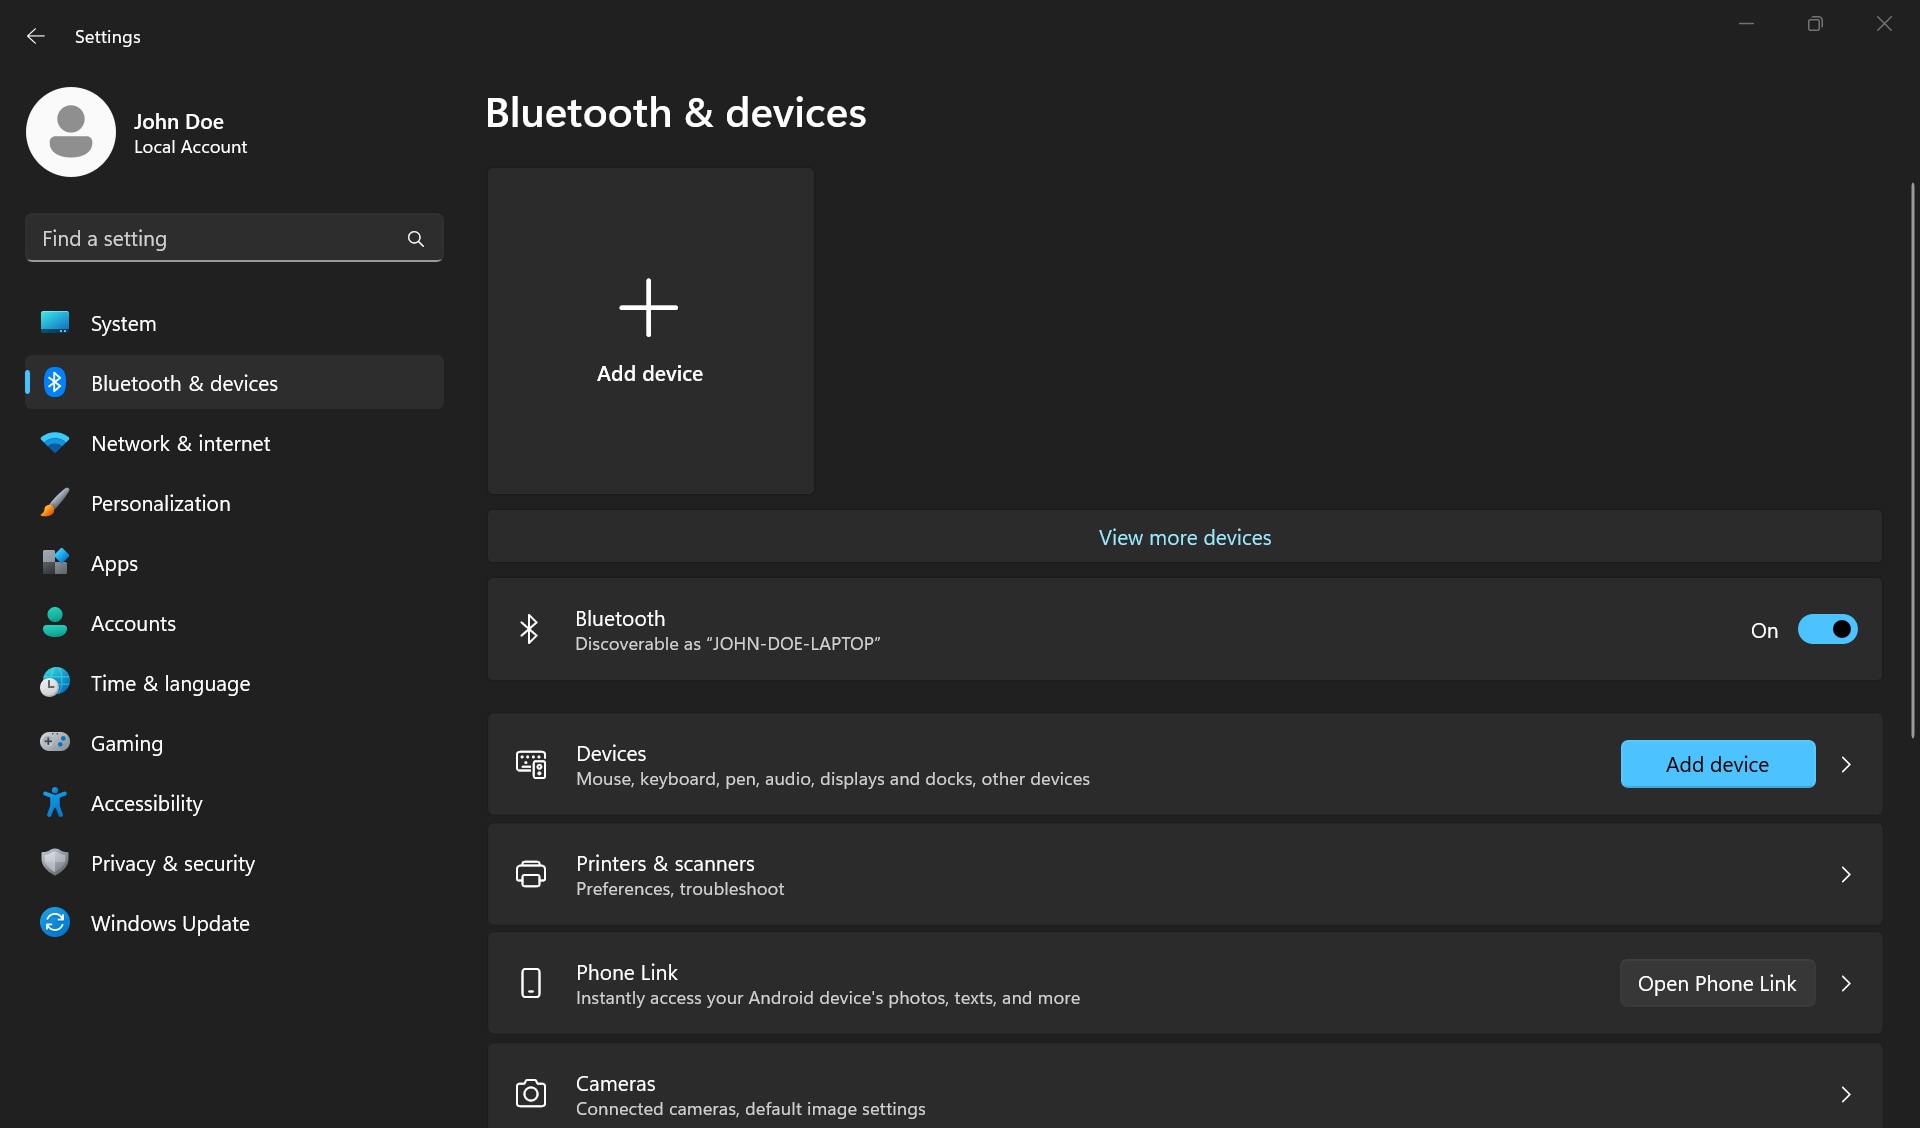 Botón Agregar dispositivo y alternancia de activación/desactivación de Bluetooth en la configuración de Bluetooth en Windows.